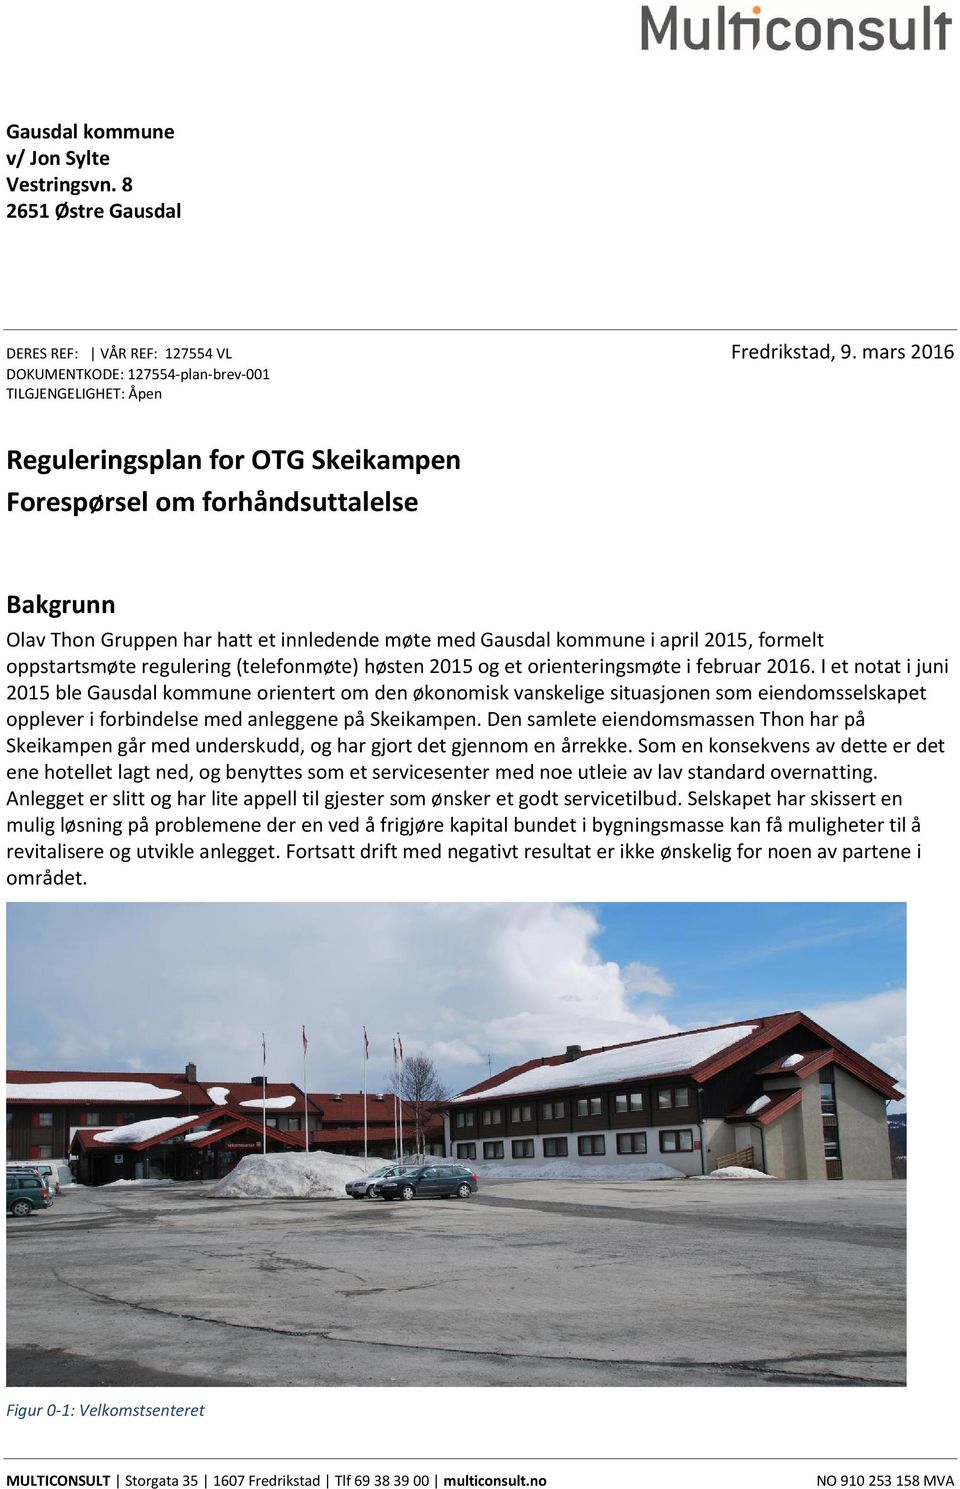 Gausdal kommune i april 2015, formelt oppstartsmøte regulering (telefonmøte) høsten 2015 og et orienteringsmøte i februar 2016.